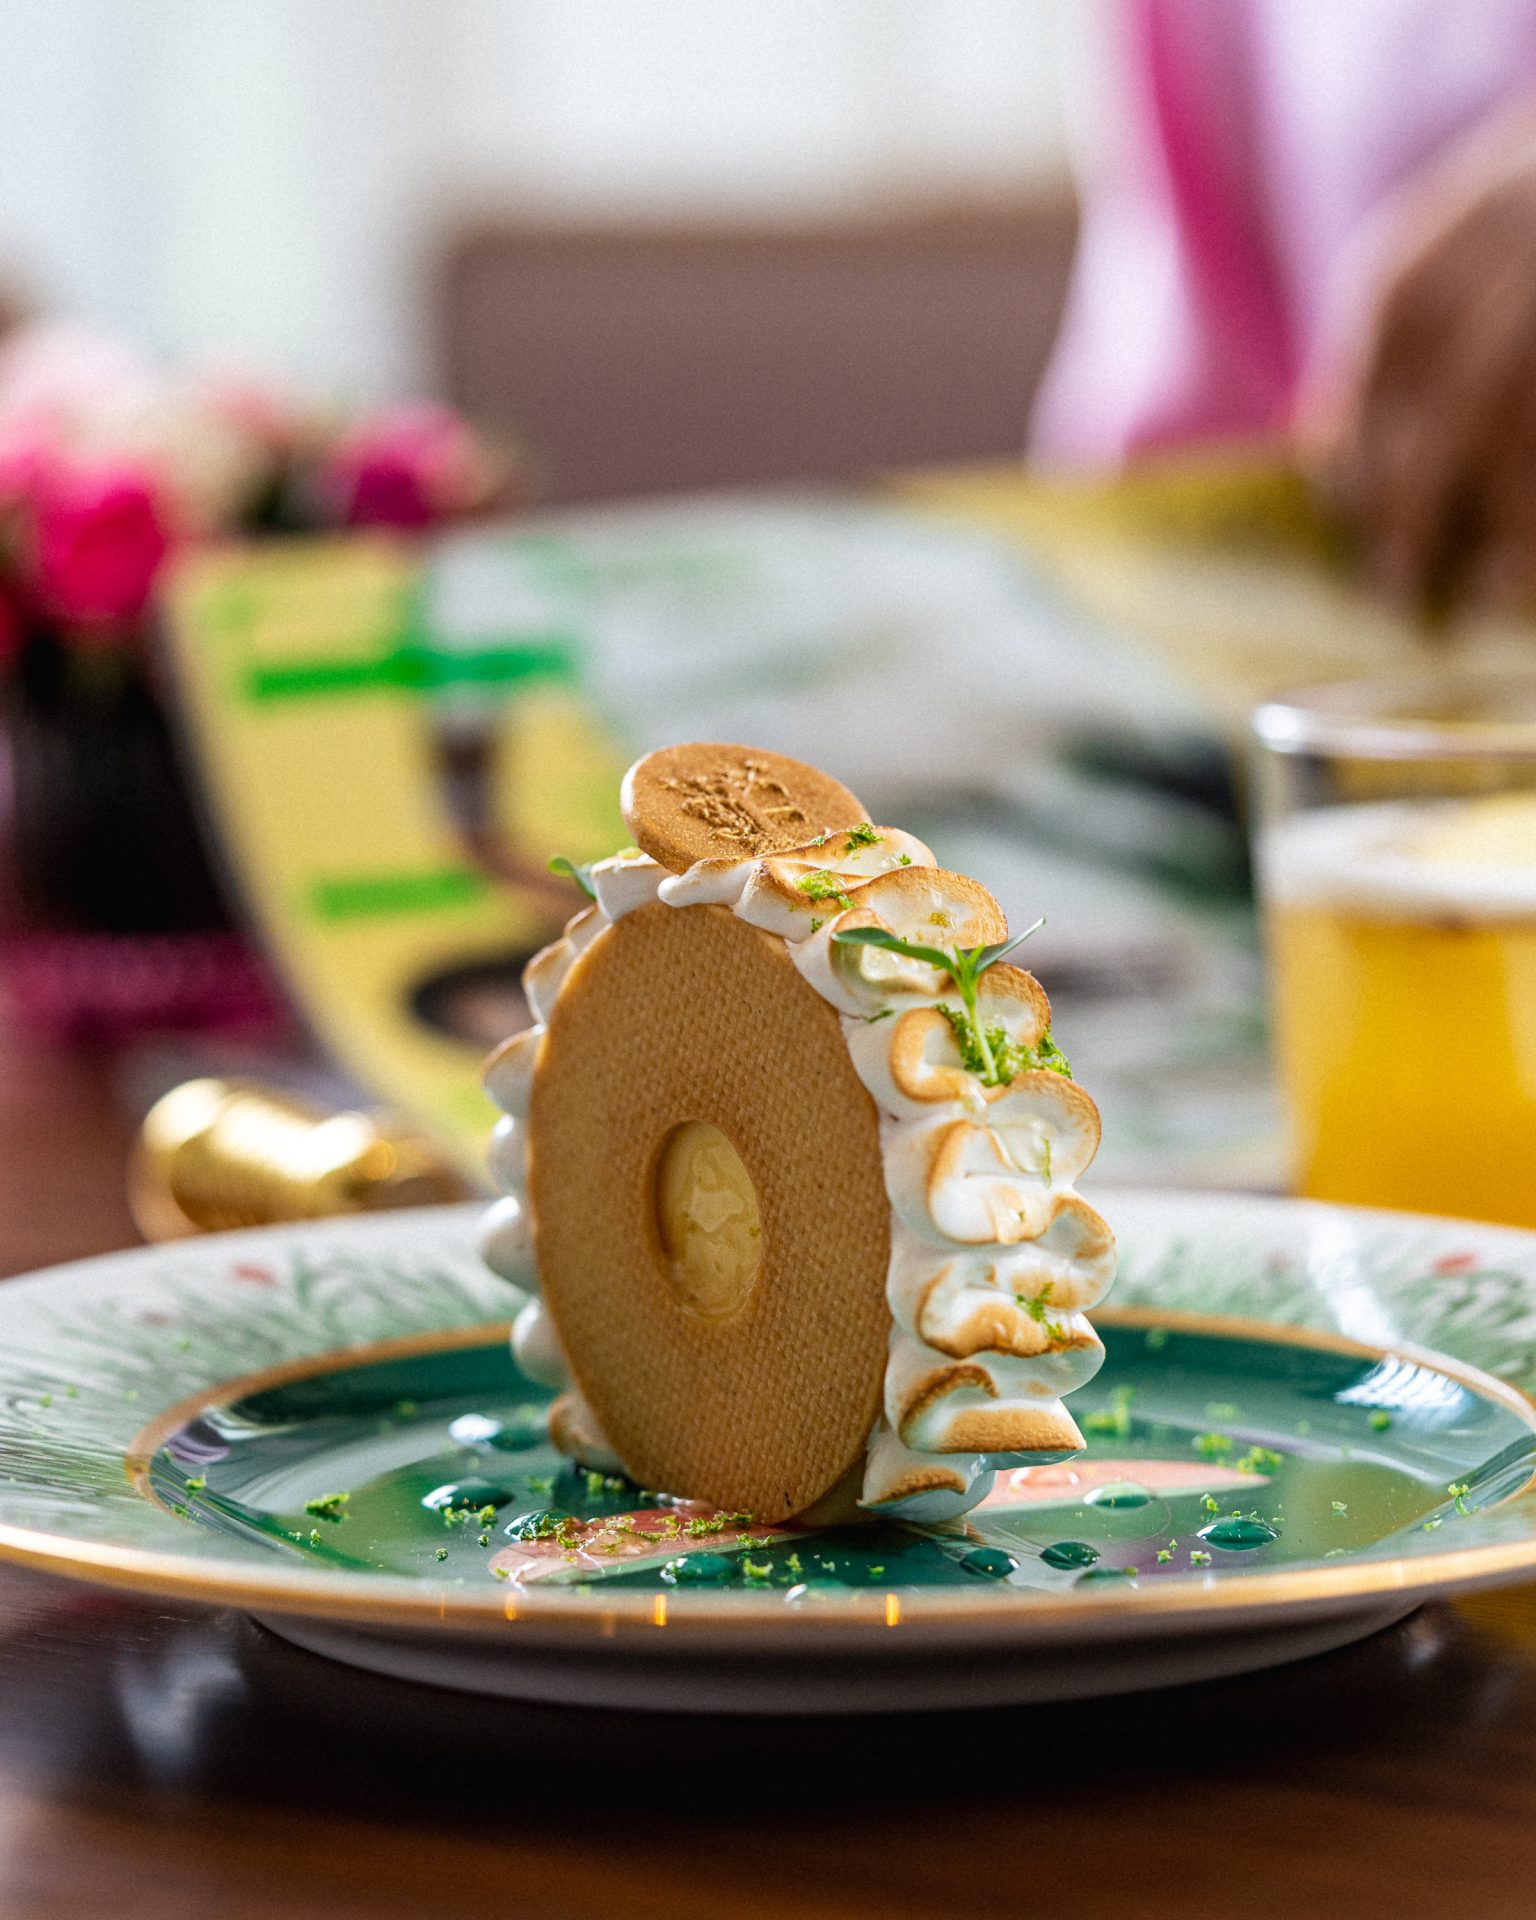 كعكة مع كريمة الليمون مقدمة من كافيه ال الواقع في فيا الرياض